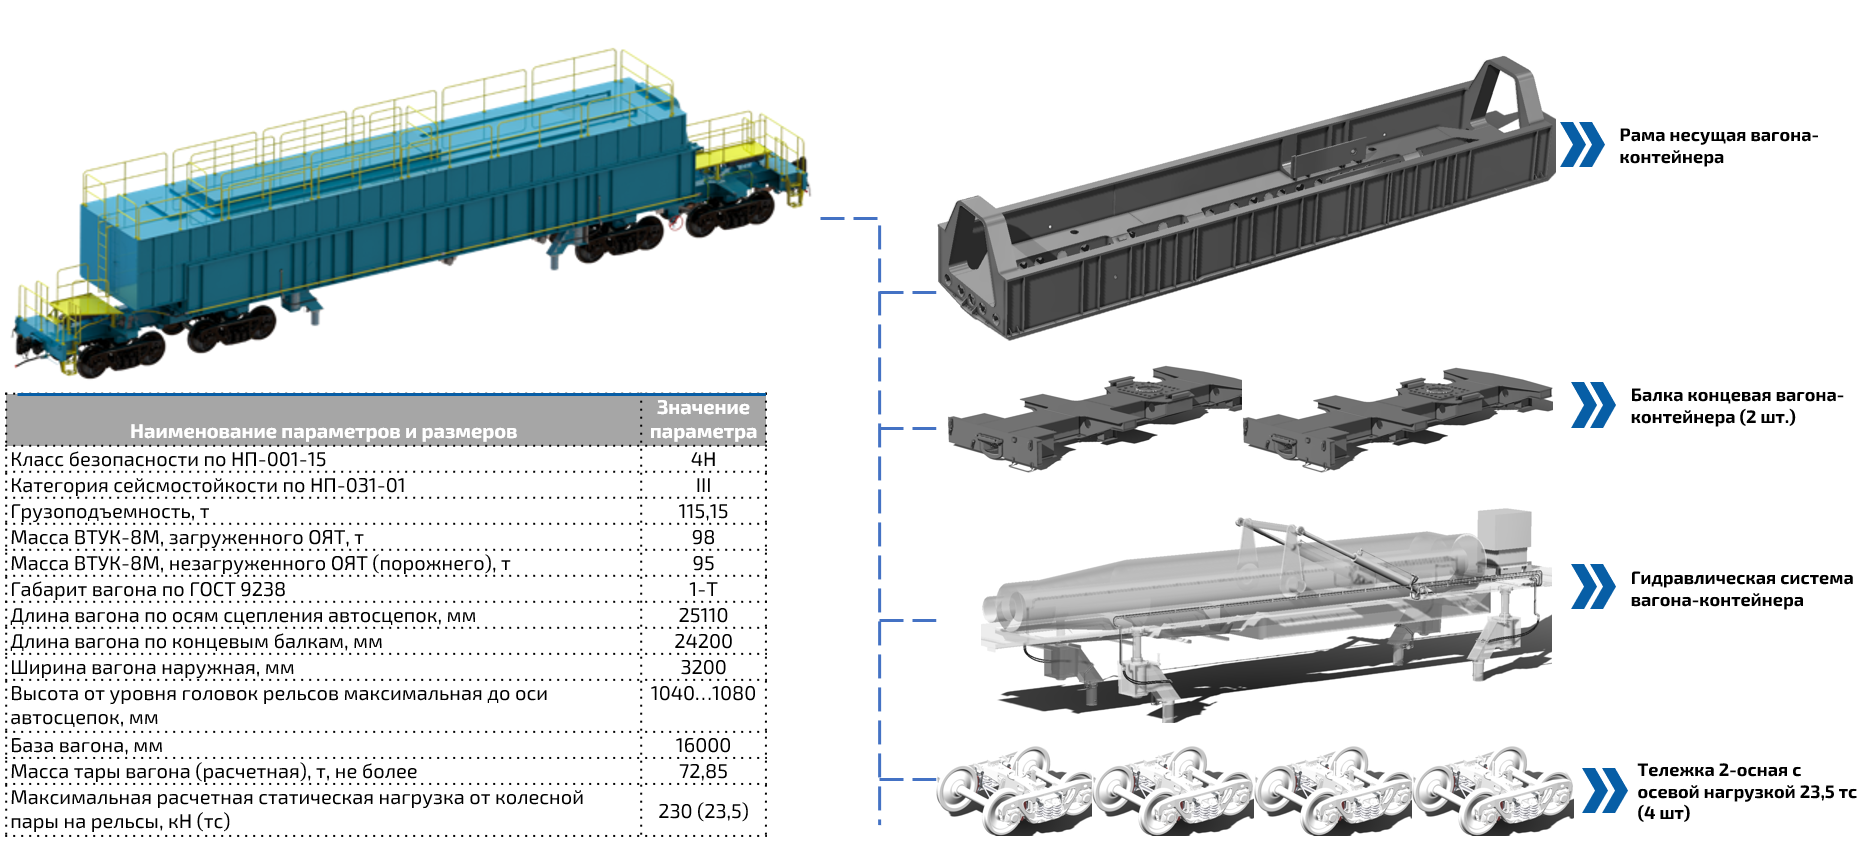 Проект транспортера для внутриобъектовых перевозок отработавших тепловыделяющих сборок реактора РБМК-1000